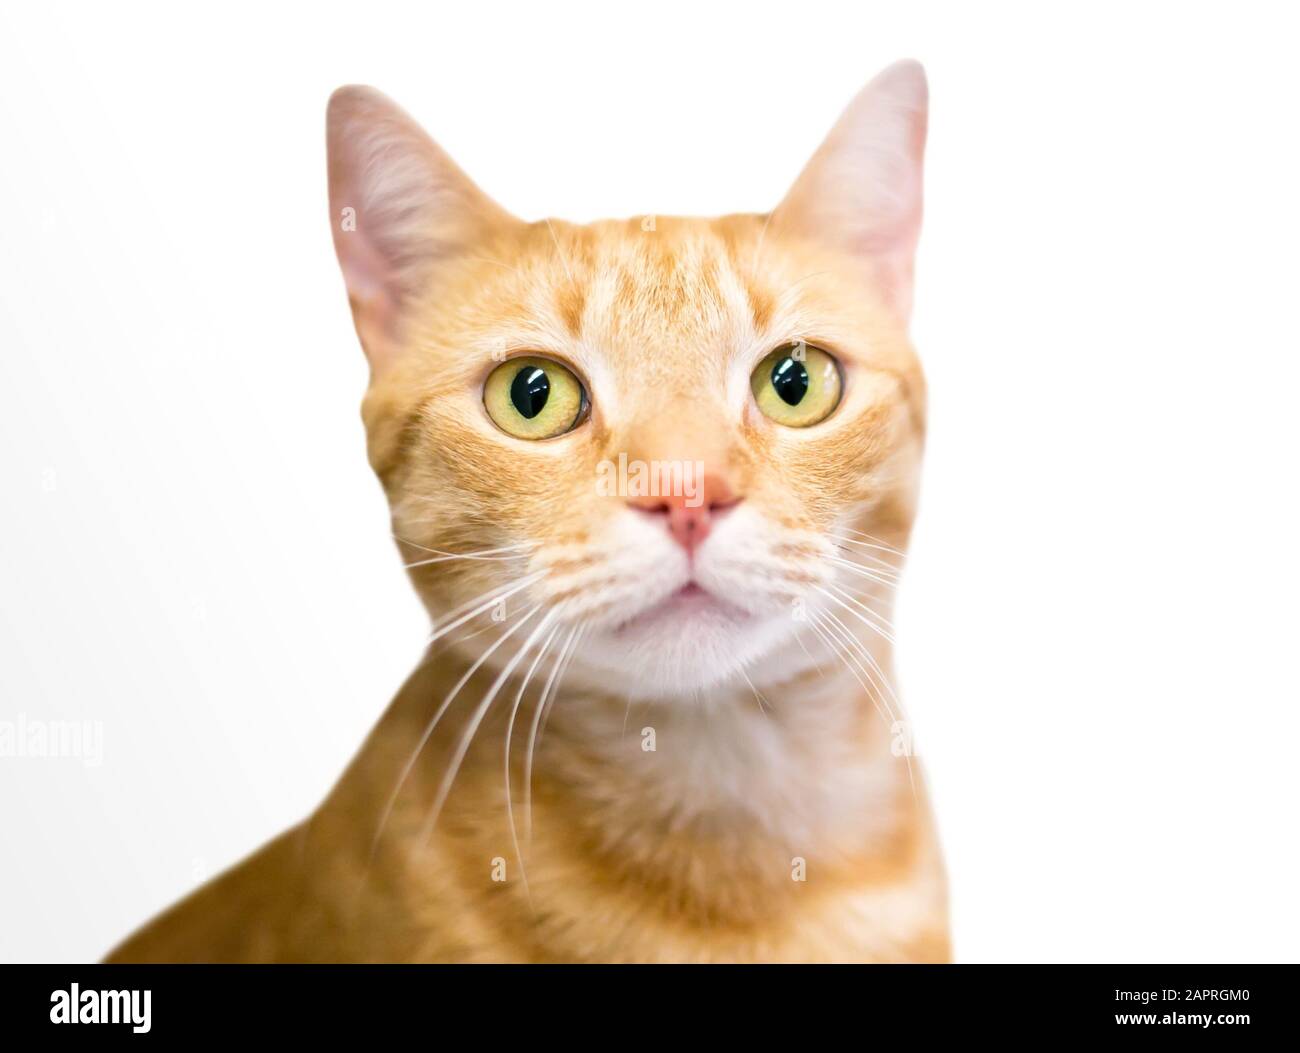 Un gatto shorthair domestico tabby arancione che guarda lateralmente con un'espressione apprensiva Foto Stock